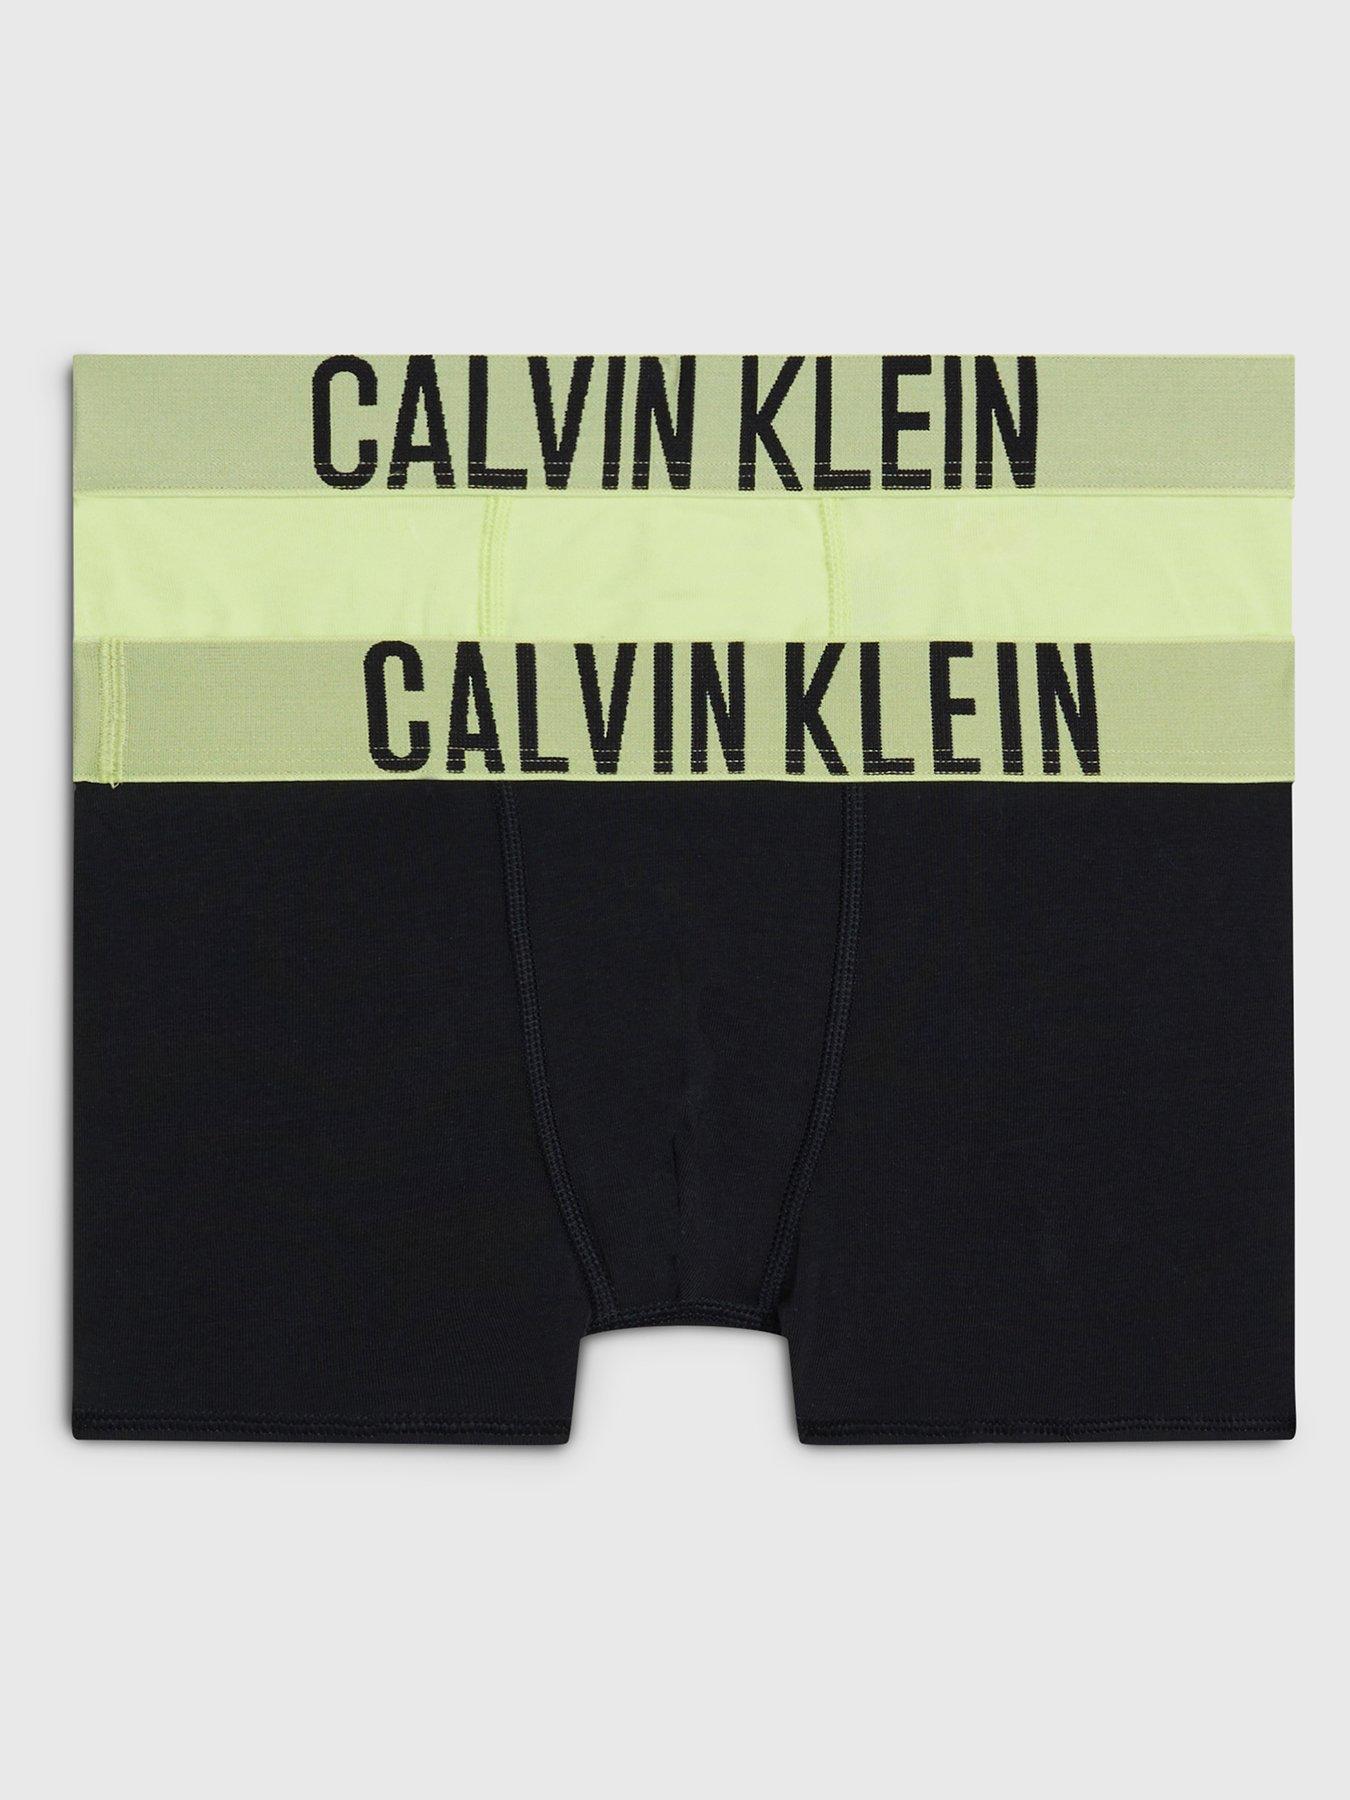 Calvin klein, Underwear & socks, Boys clothes